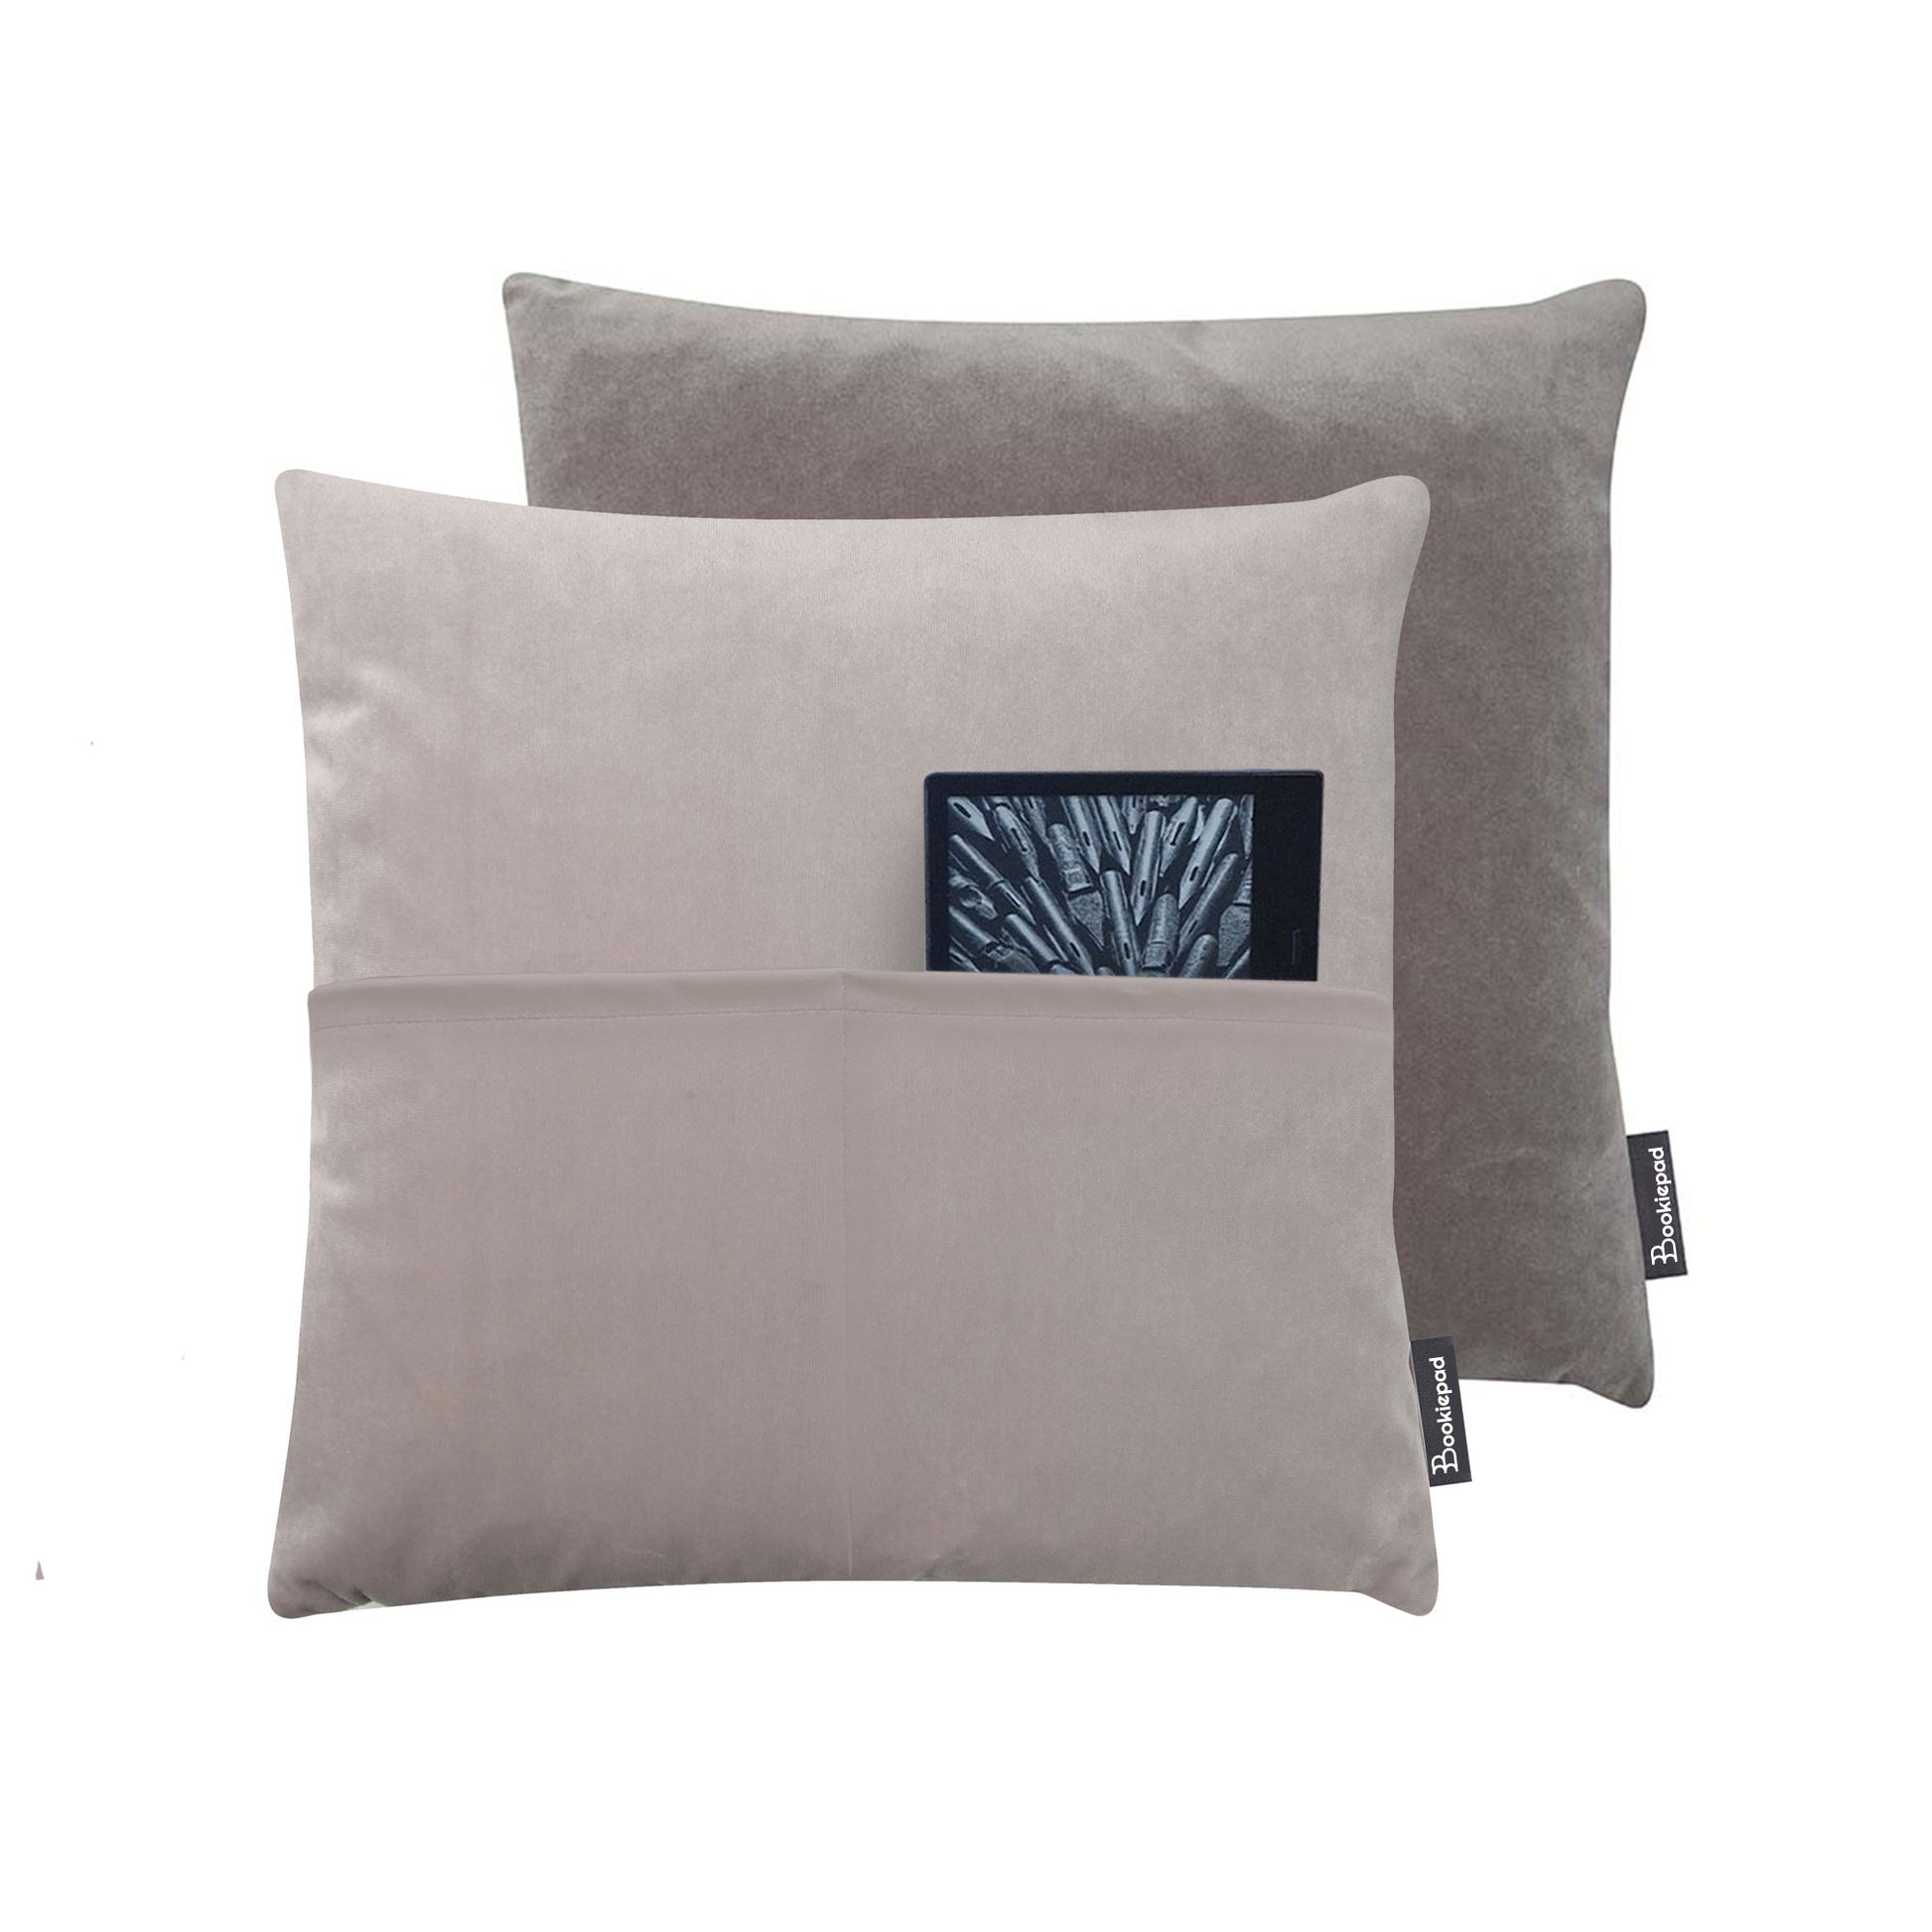 Kissen mit Tasche Cozy Samt in - Grau - Bookiepad, Taschenkissen, Bücherkissen, Lesekissen